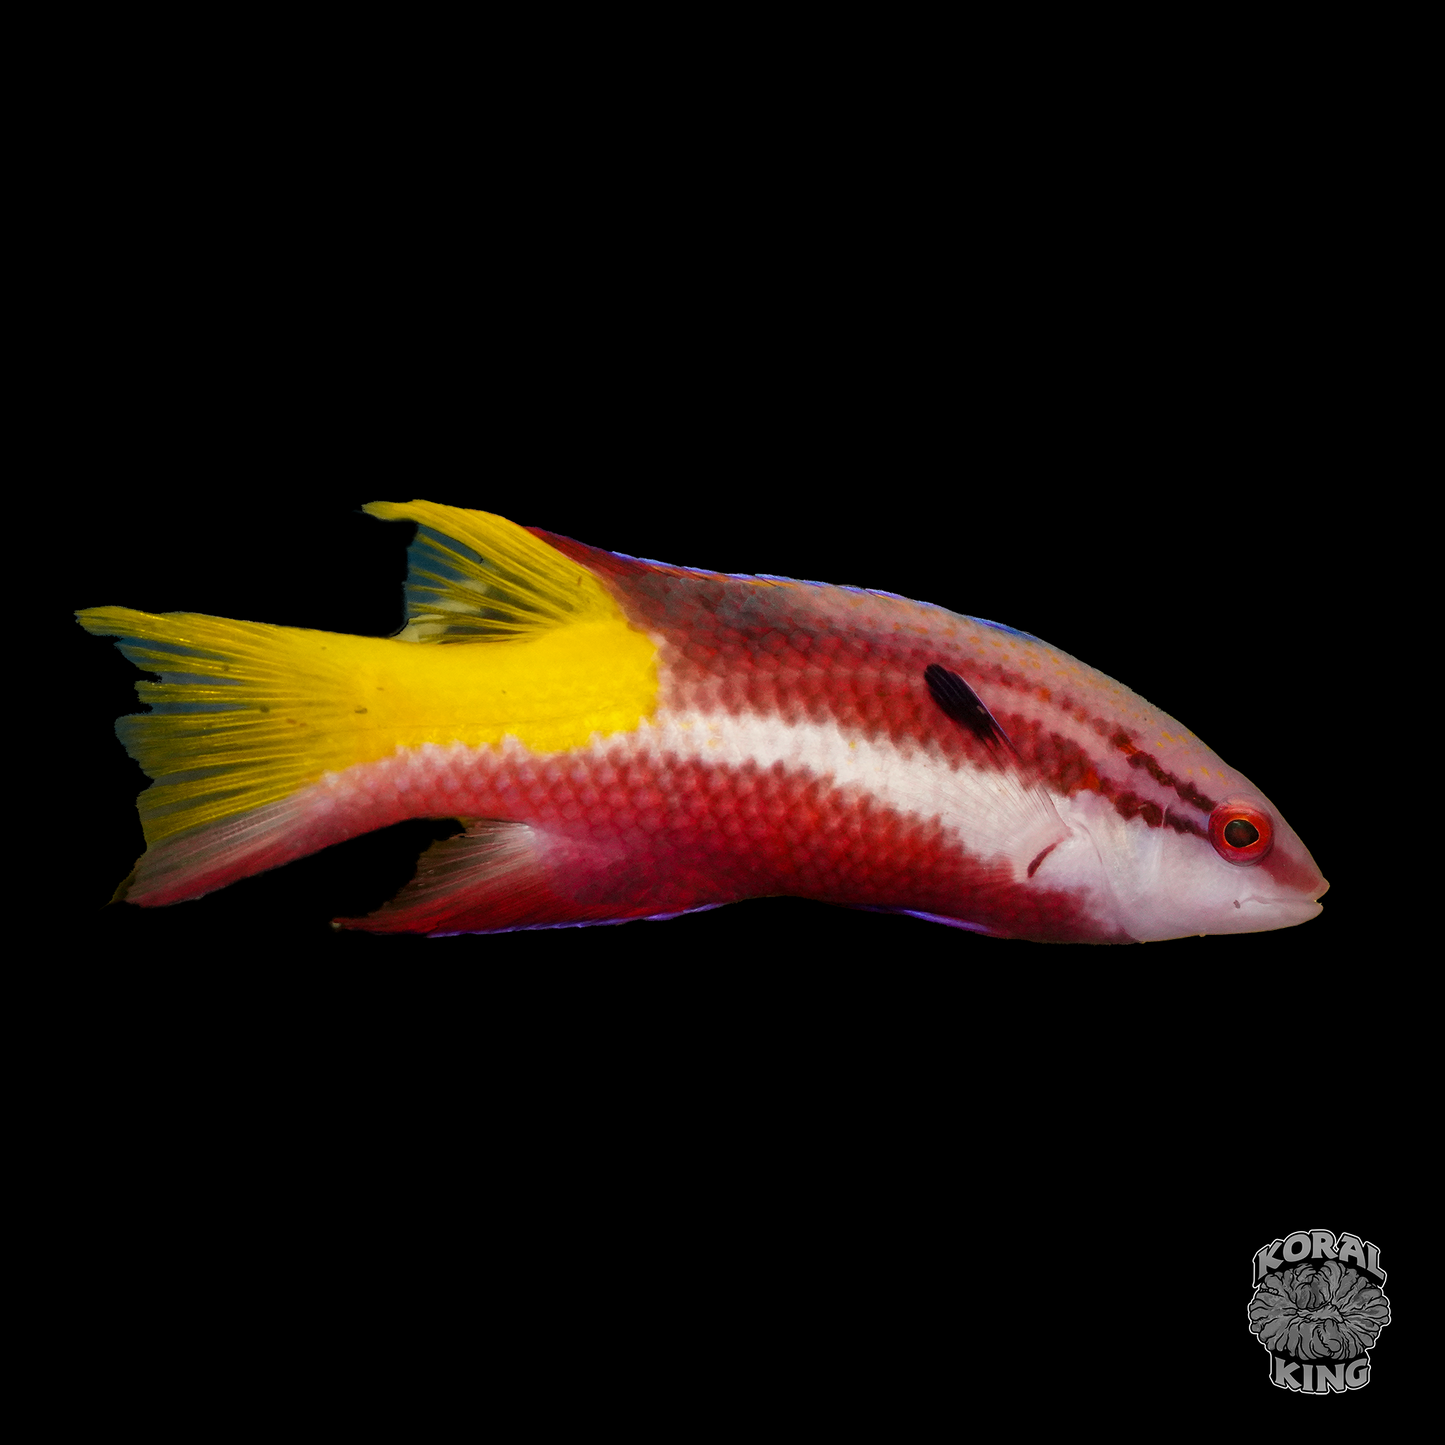 Cuban Hogfish - Koral King